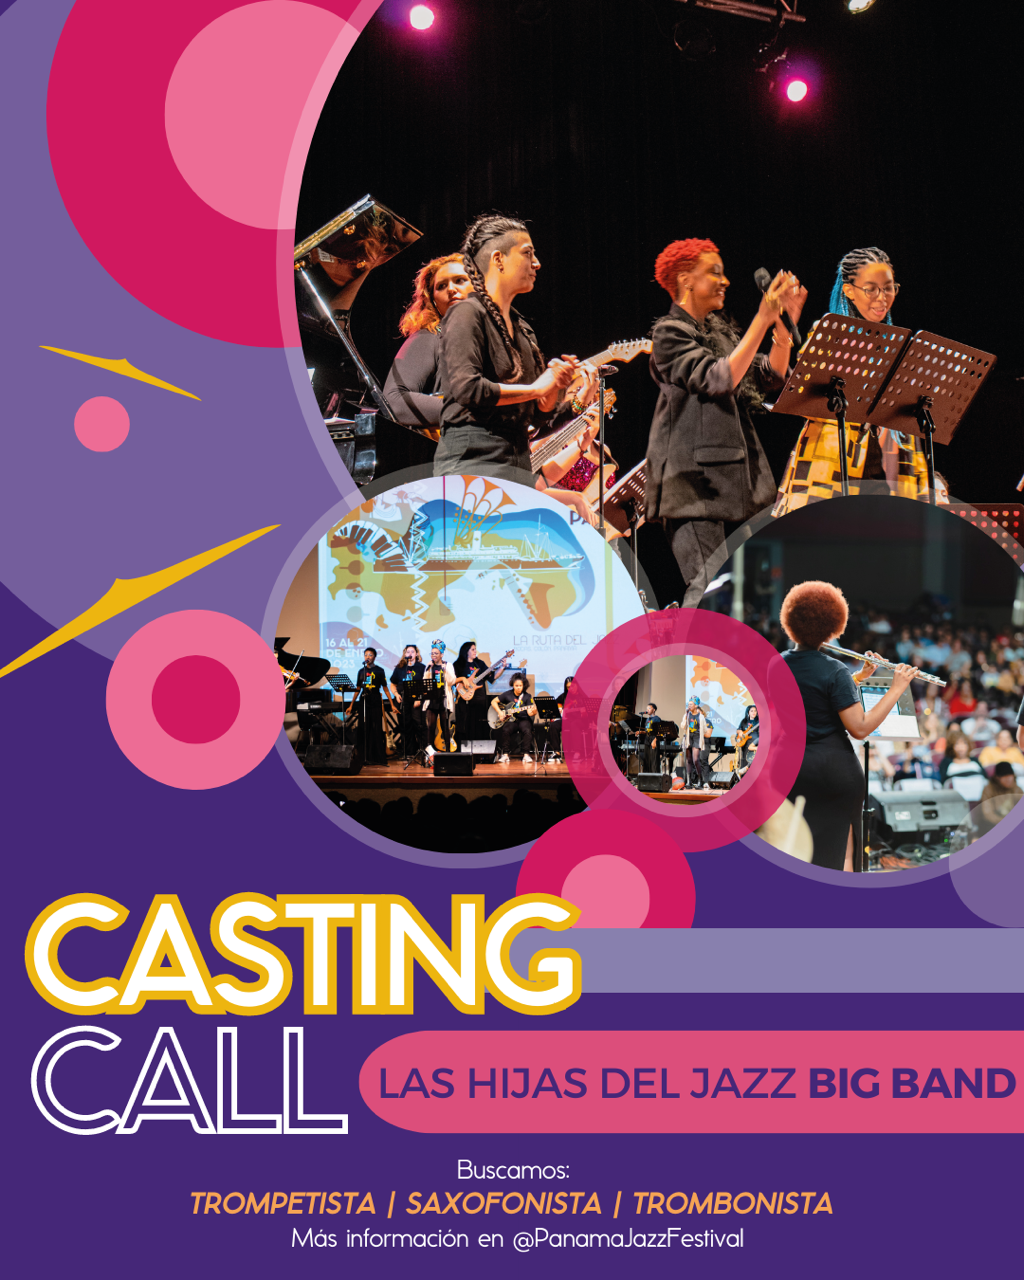 Fundación Danilo Pérez abre audiciones para formar parte de Las Hijas del Jazz Big Band y participar durante el Panama Jazz Festival del 15 al 20 de enero de 2024.